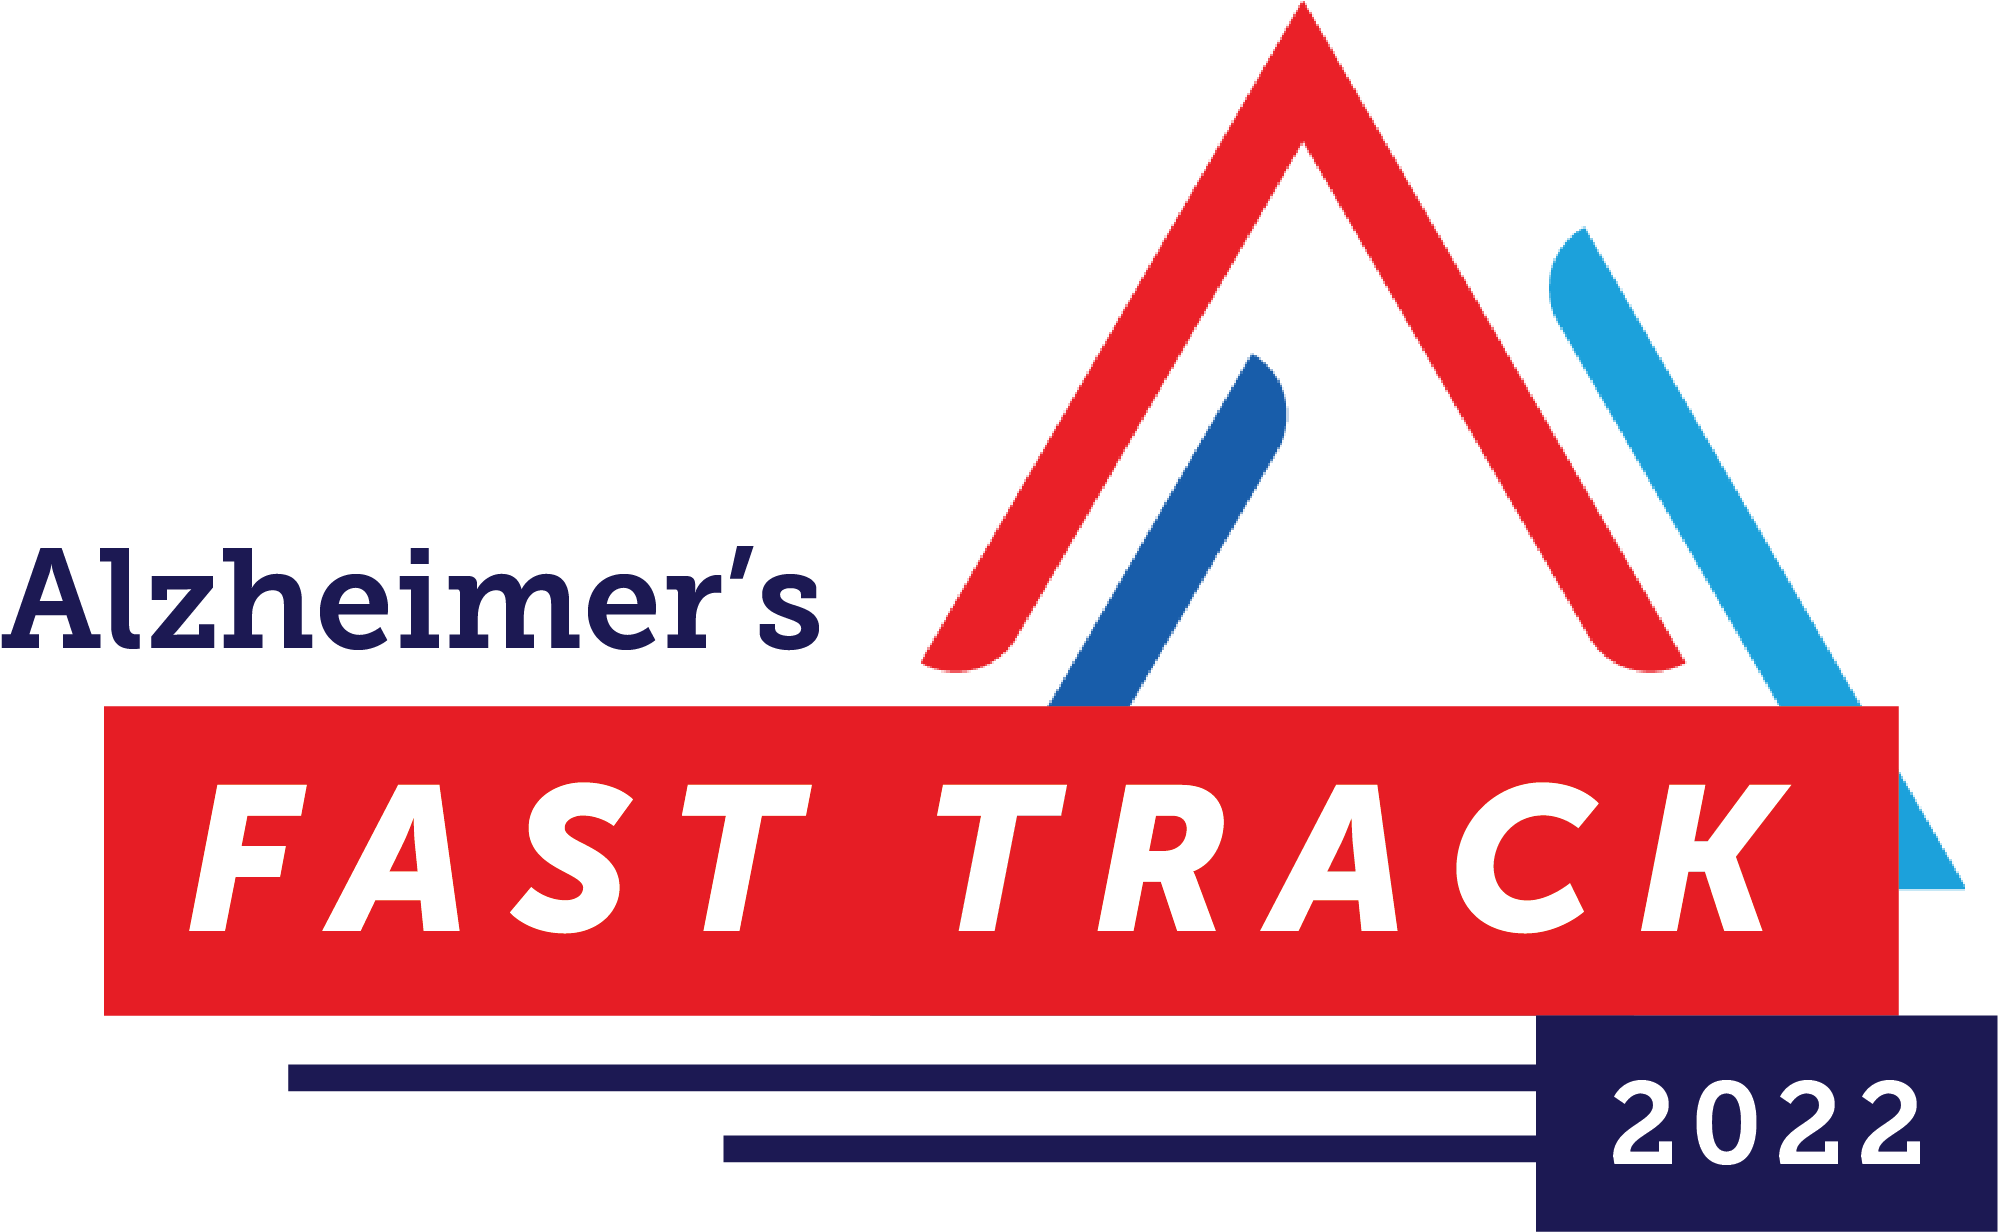 alzheimer's fast track logo 2022